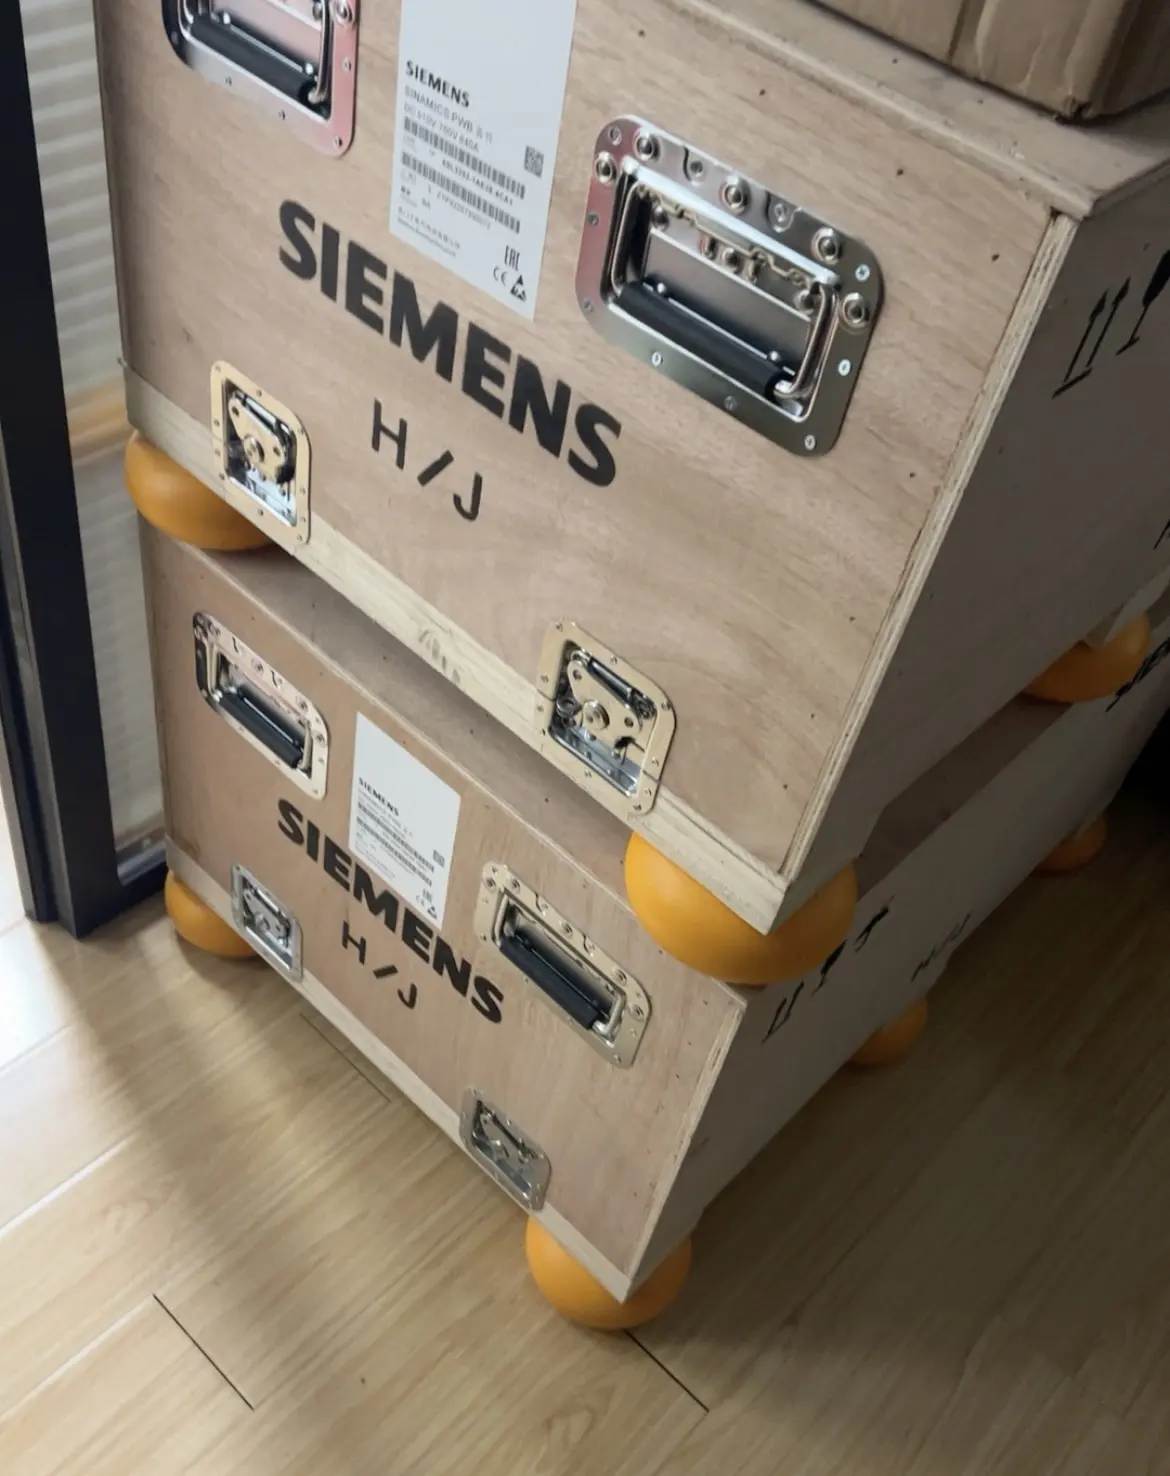 Siemens sinabackup yedek güç bloğu 6SL3351-1AE36-1BA1 için 380-480V üç fazlı AC 50/60Hz 100% yepyeni ve kökeni